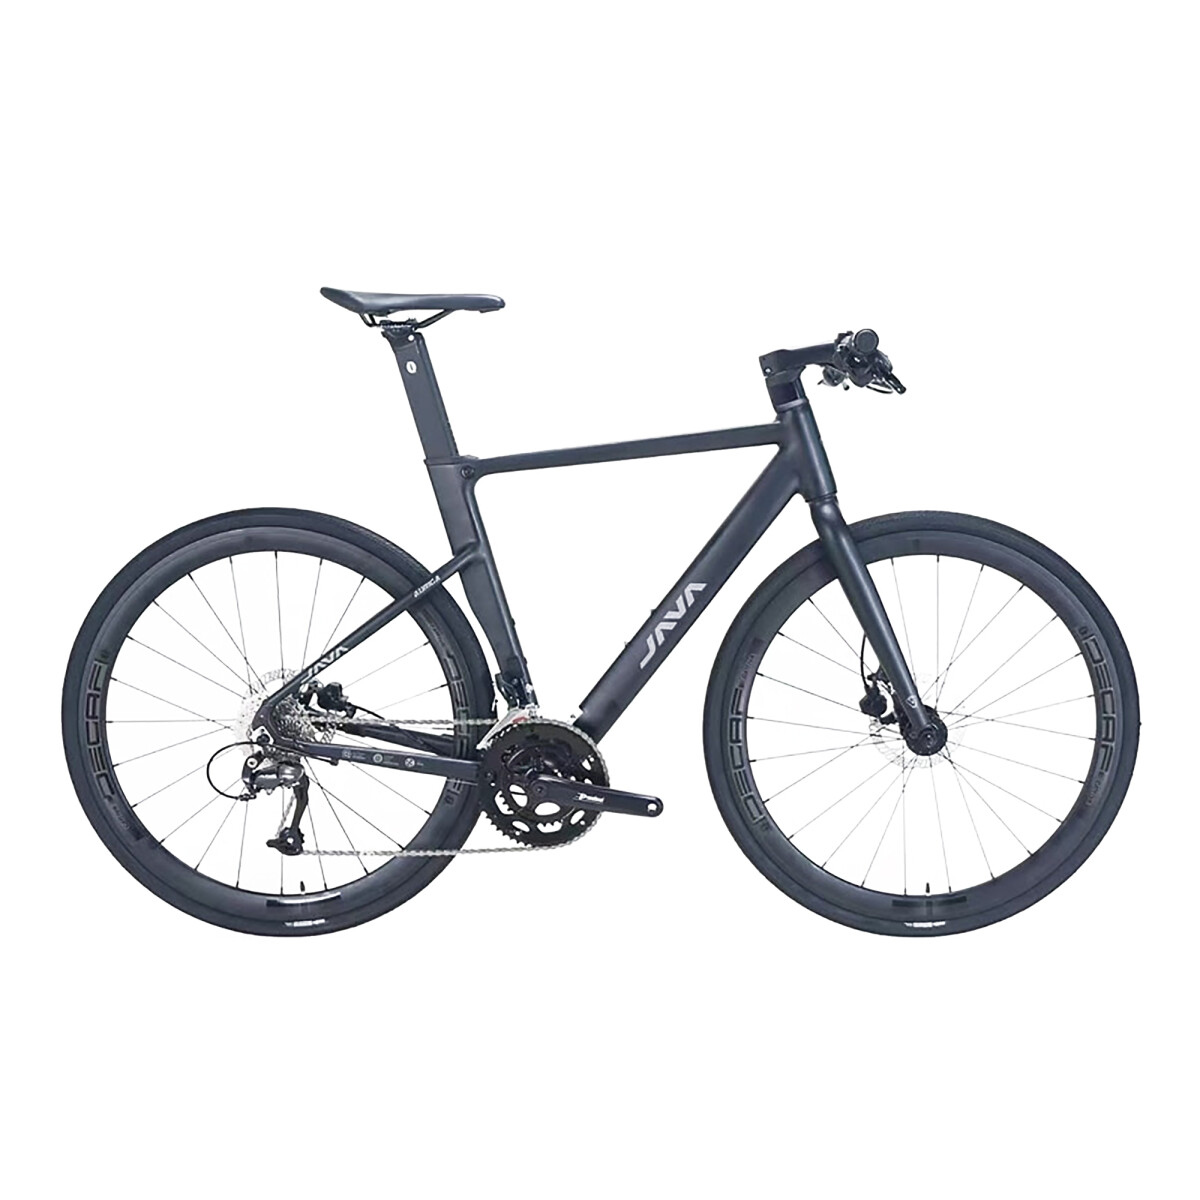 Java - Bicicleta de Ciudad Auriga - 700C. 18 Velocidades, Talle 54. Color Negro. - 001 